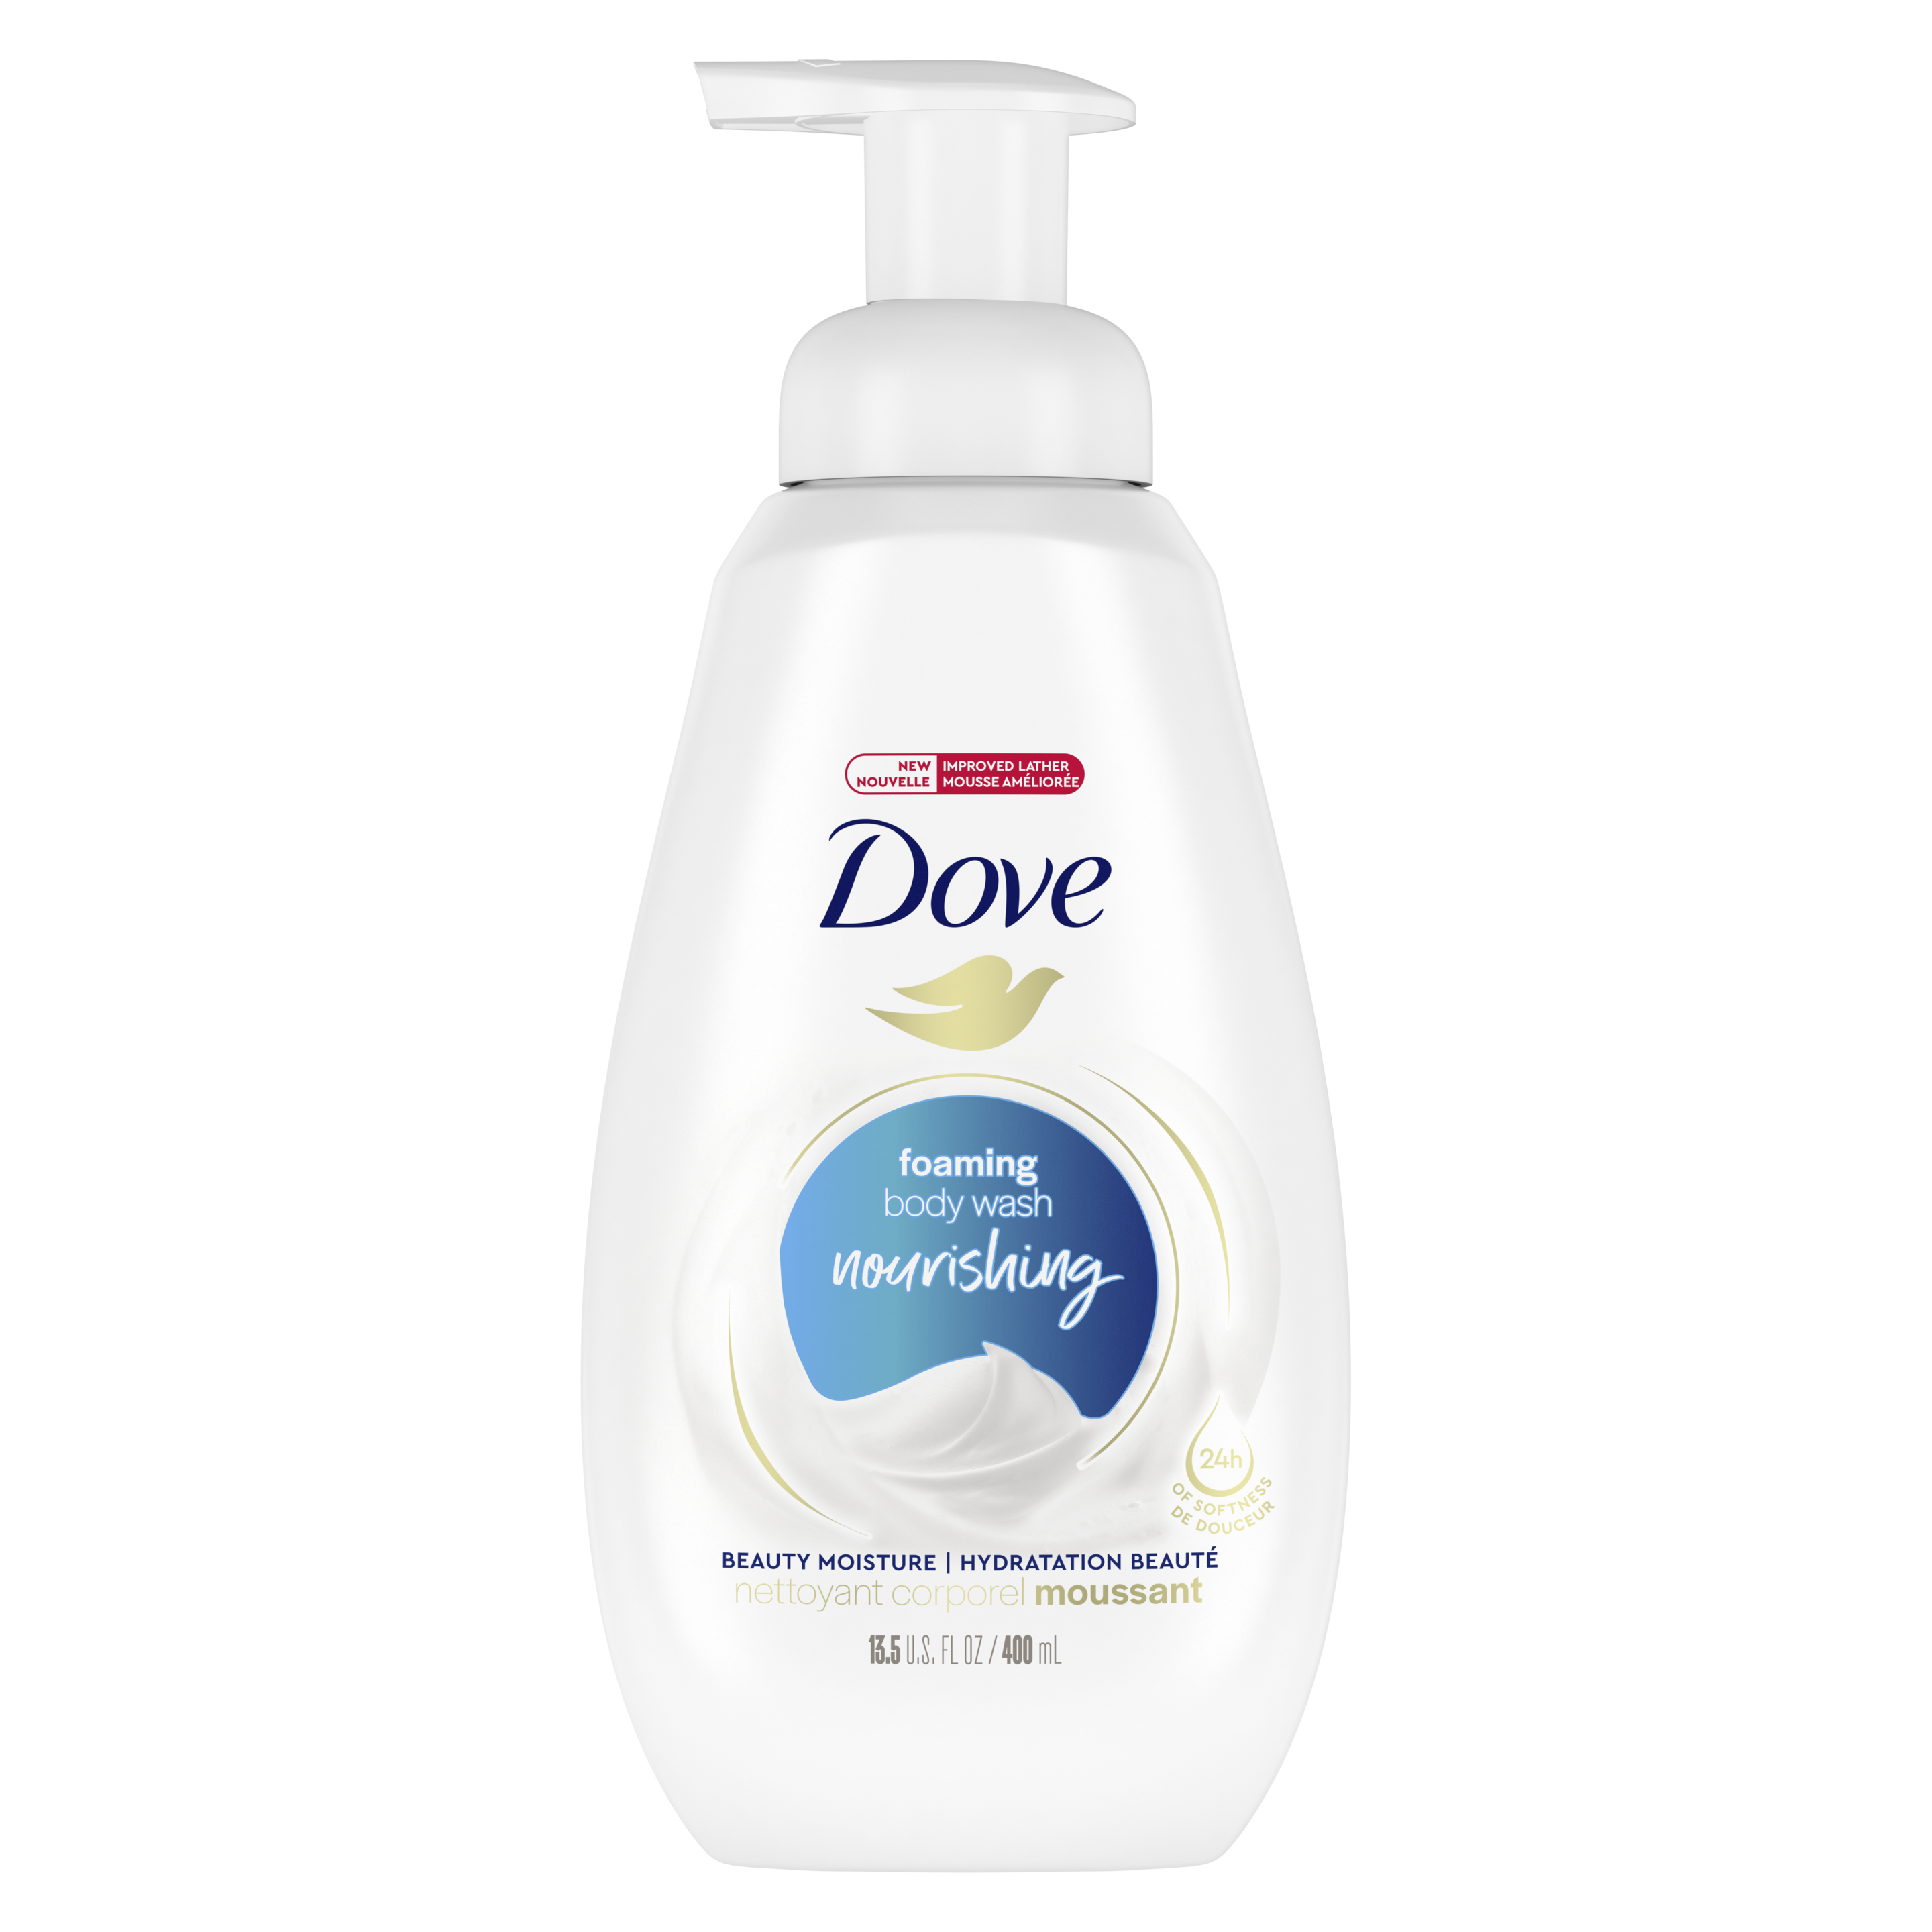 Dove Shower Foam Deep Moisture Foaming Body Wash